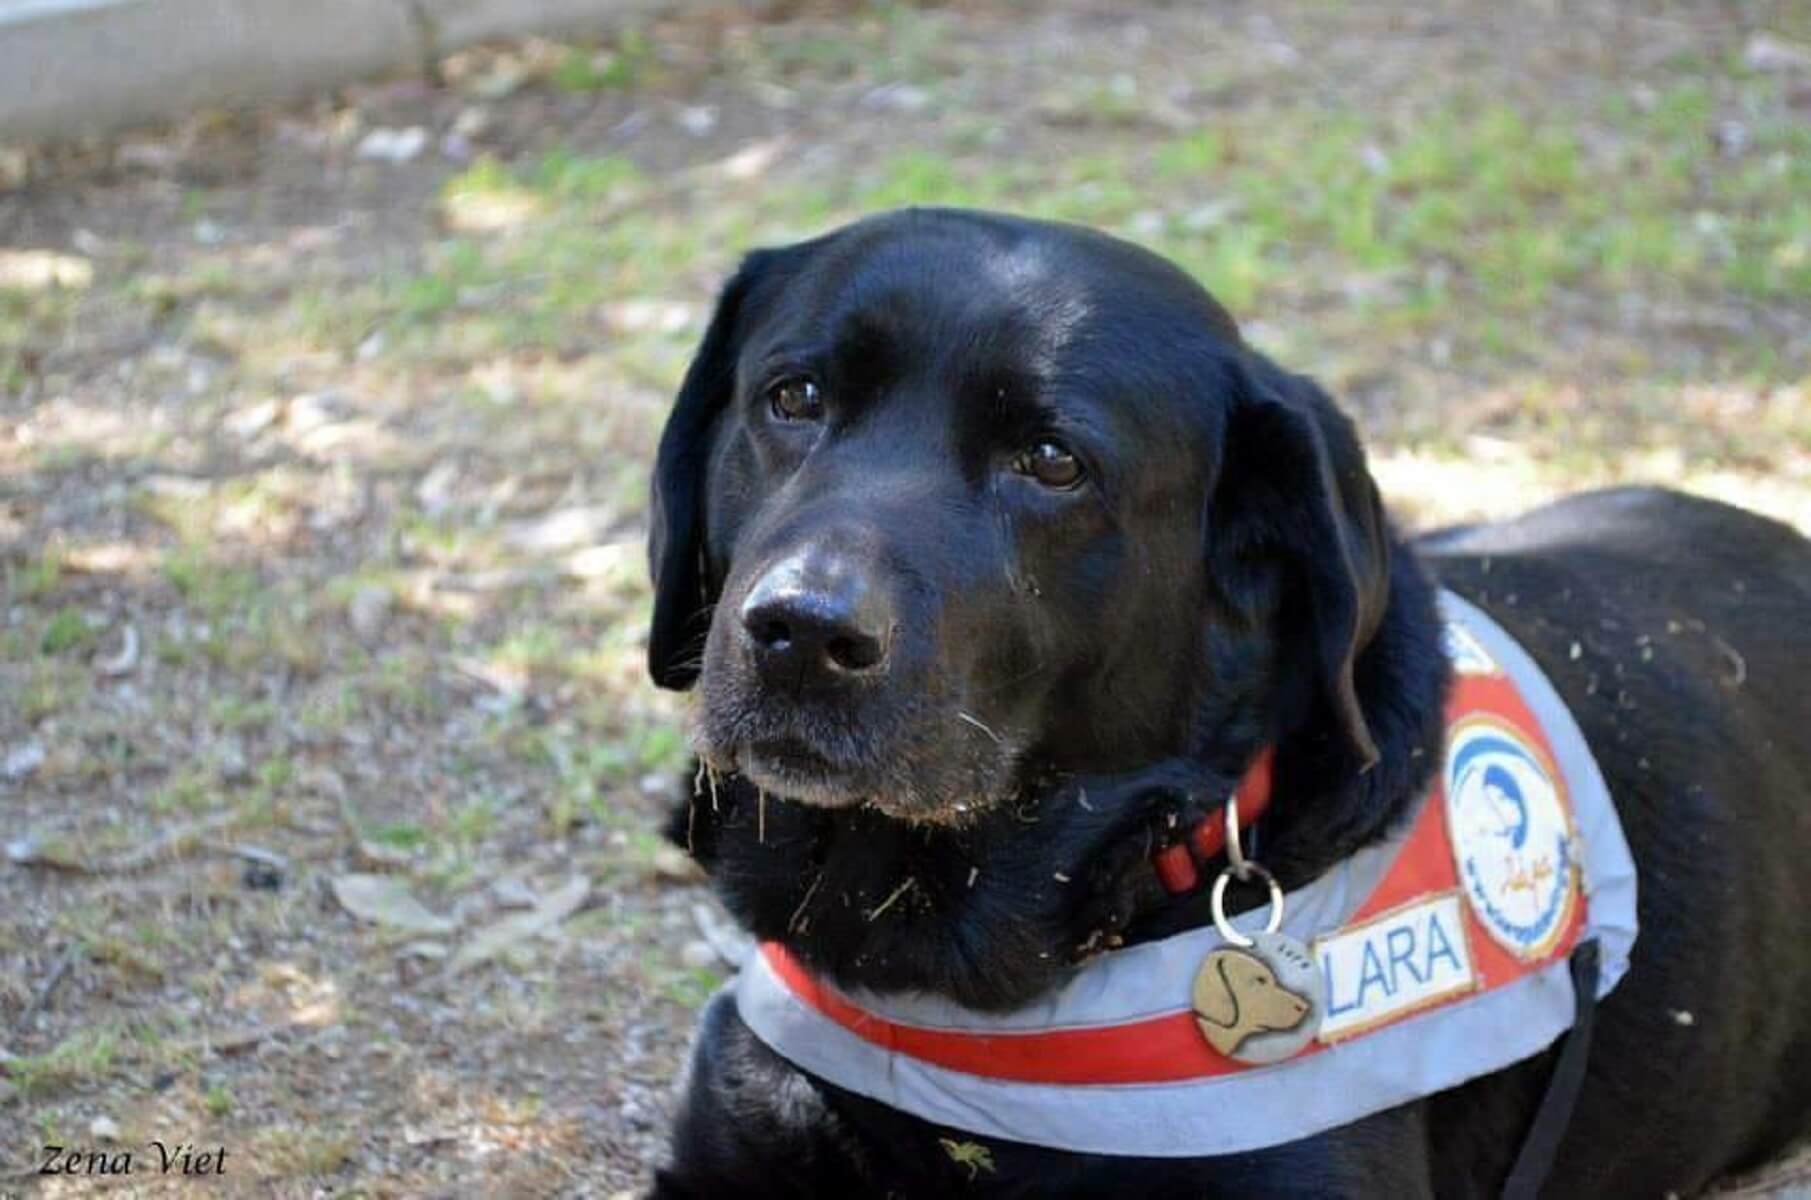 Πέθανε η Λάρα, ο πρώτος σκύλος – οδηγός για τους τυφλούς στην Ελλάδα